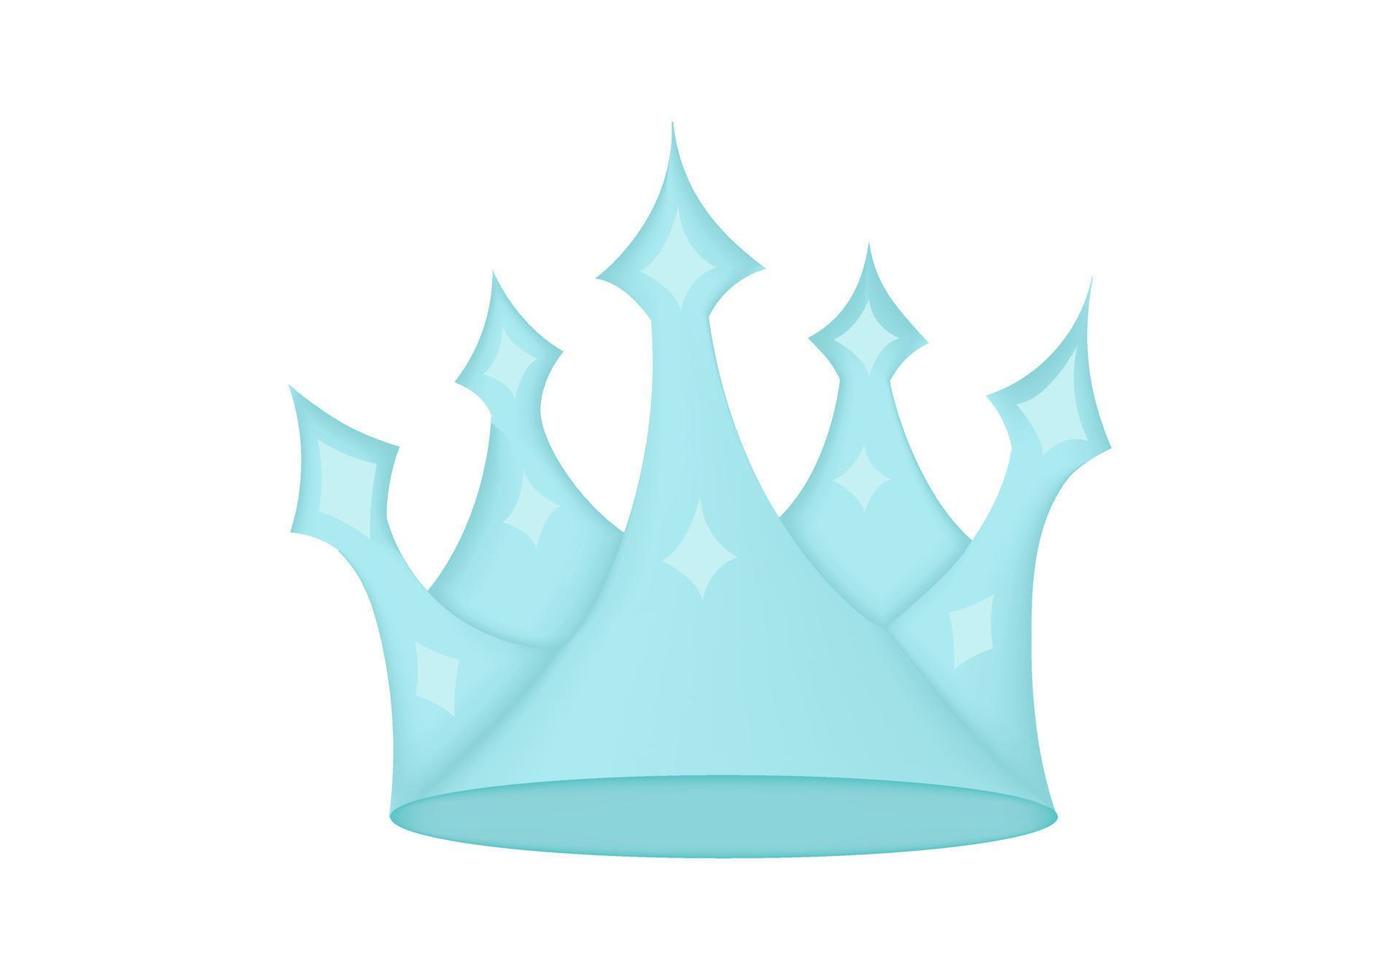 ilustração da coroa de rainhas com joias vetor